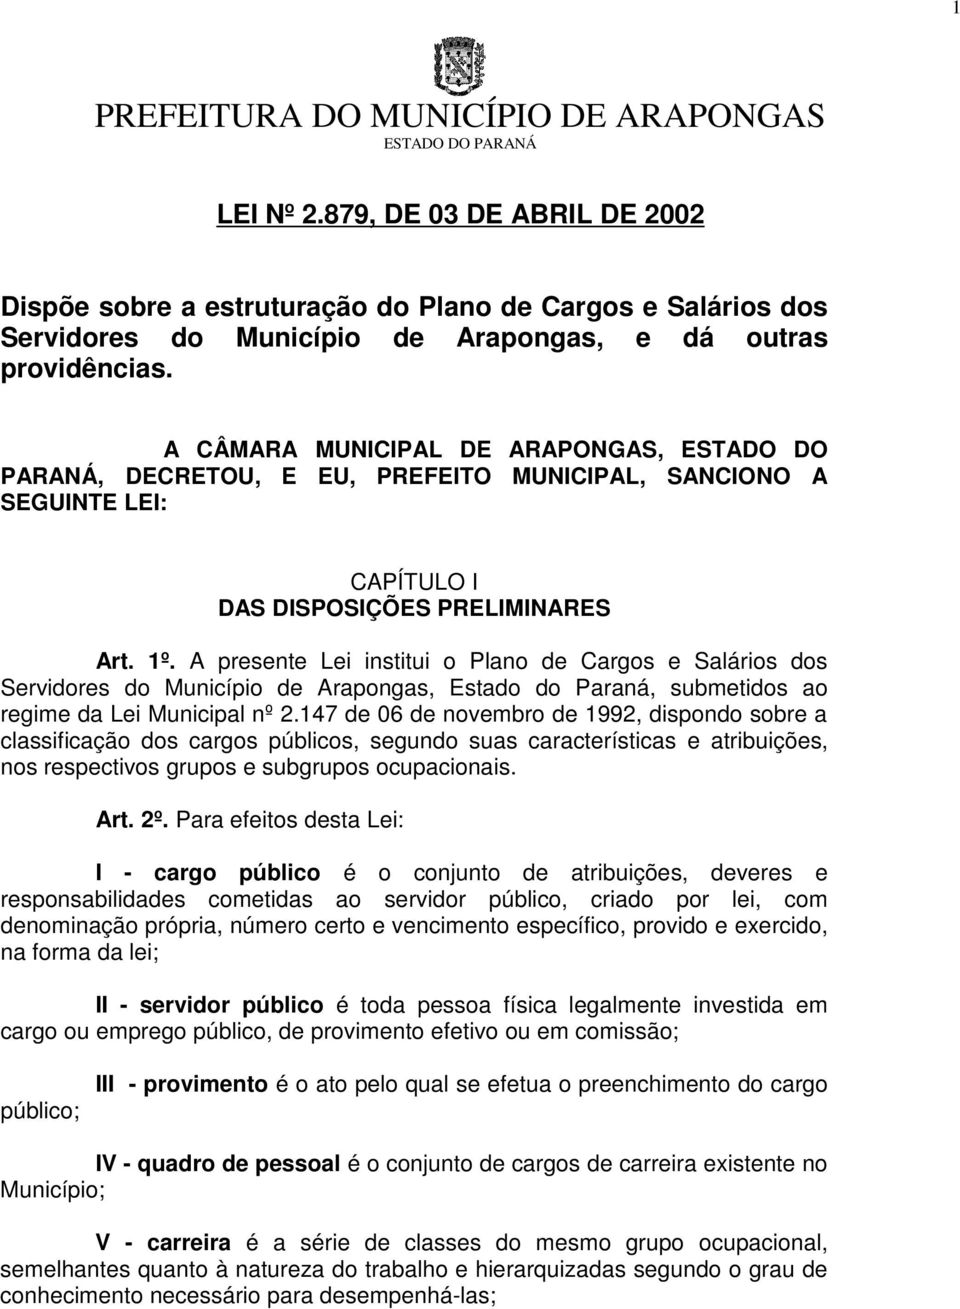 A presente Lei institui o Plano de Cargos e Salários dos Servidores do Município de Arapongas, Estado do Paraná, submetidos ao regime da Lei Municipal nº 2.